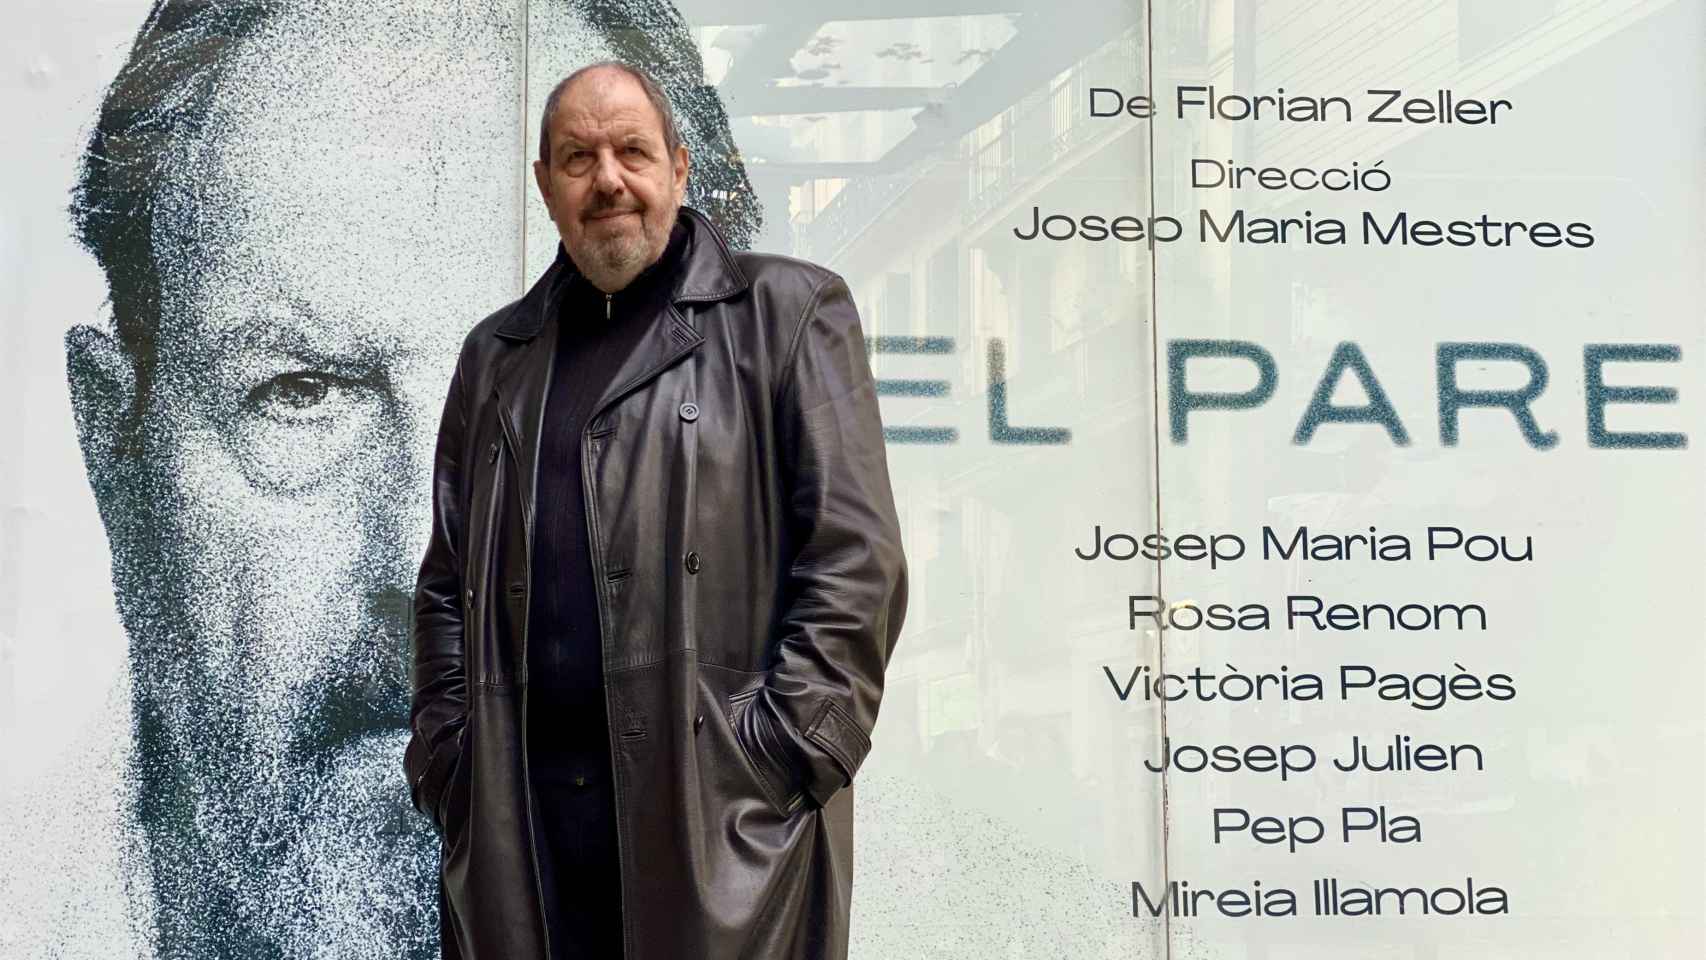 El actor Josep Maria Pou posa frente al cartel de 'El pare'